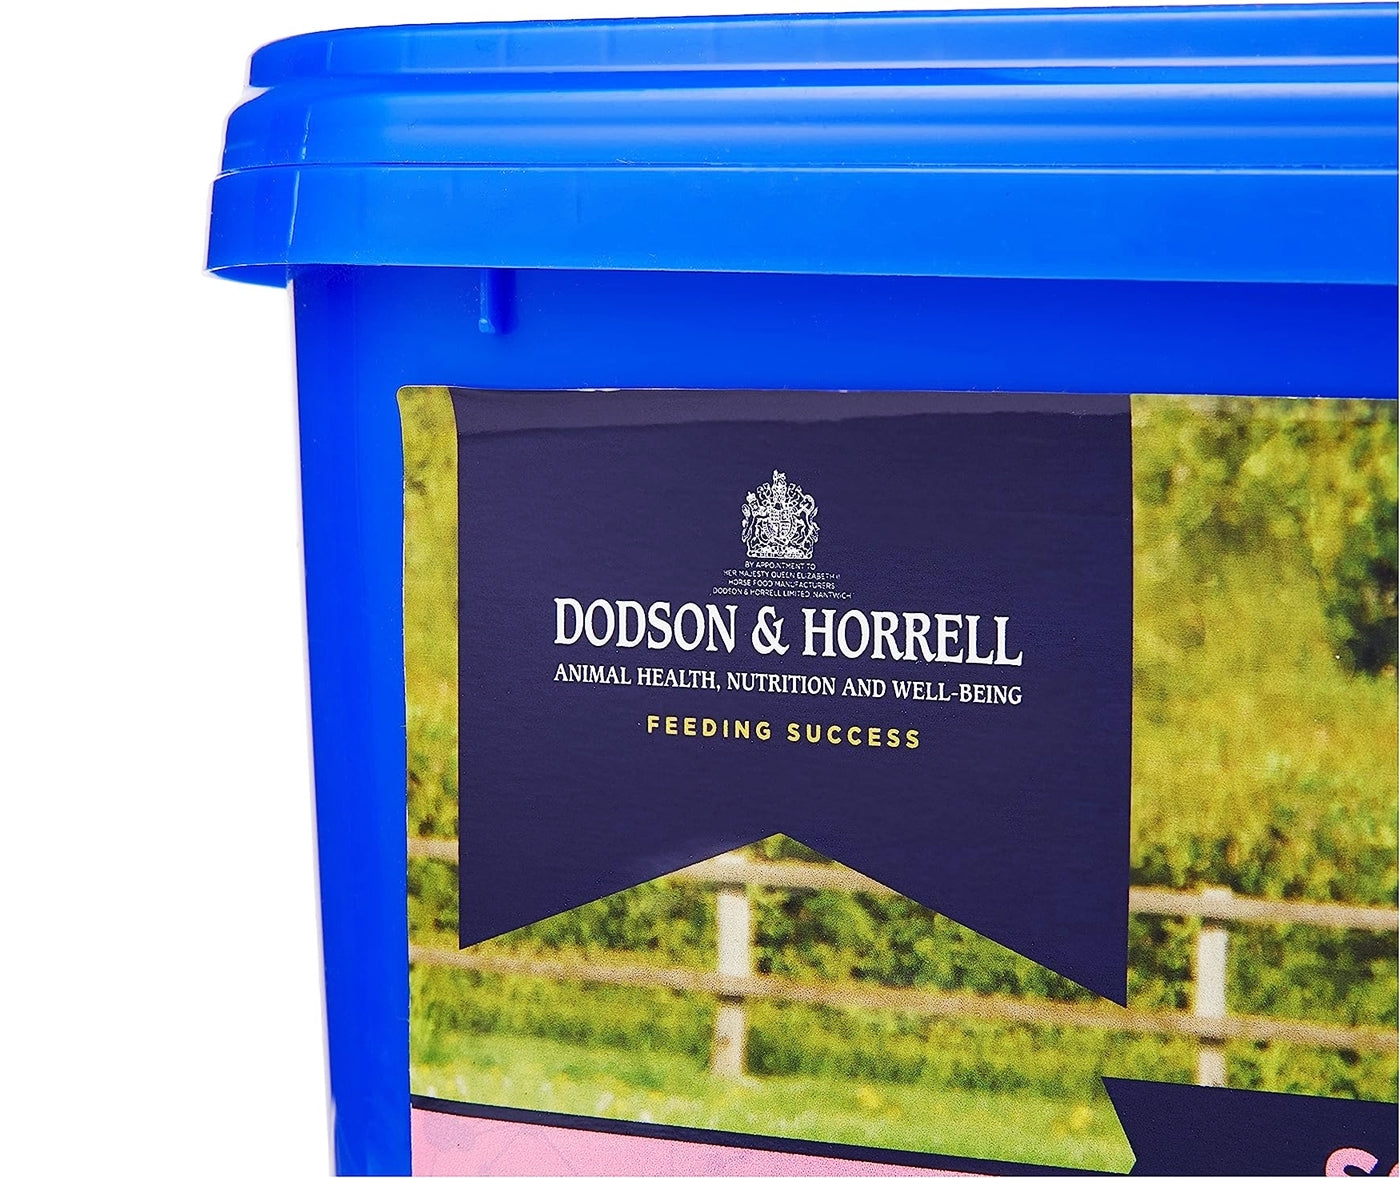 Dodson & Horrell - Stroppy Mare | Horse Care - Buy Online SPR Centre UK